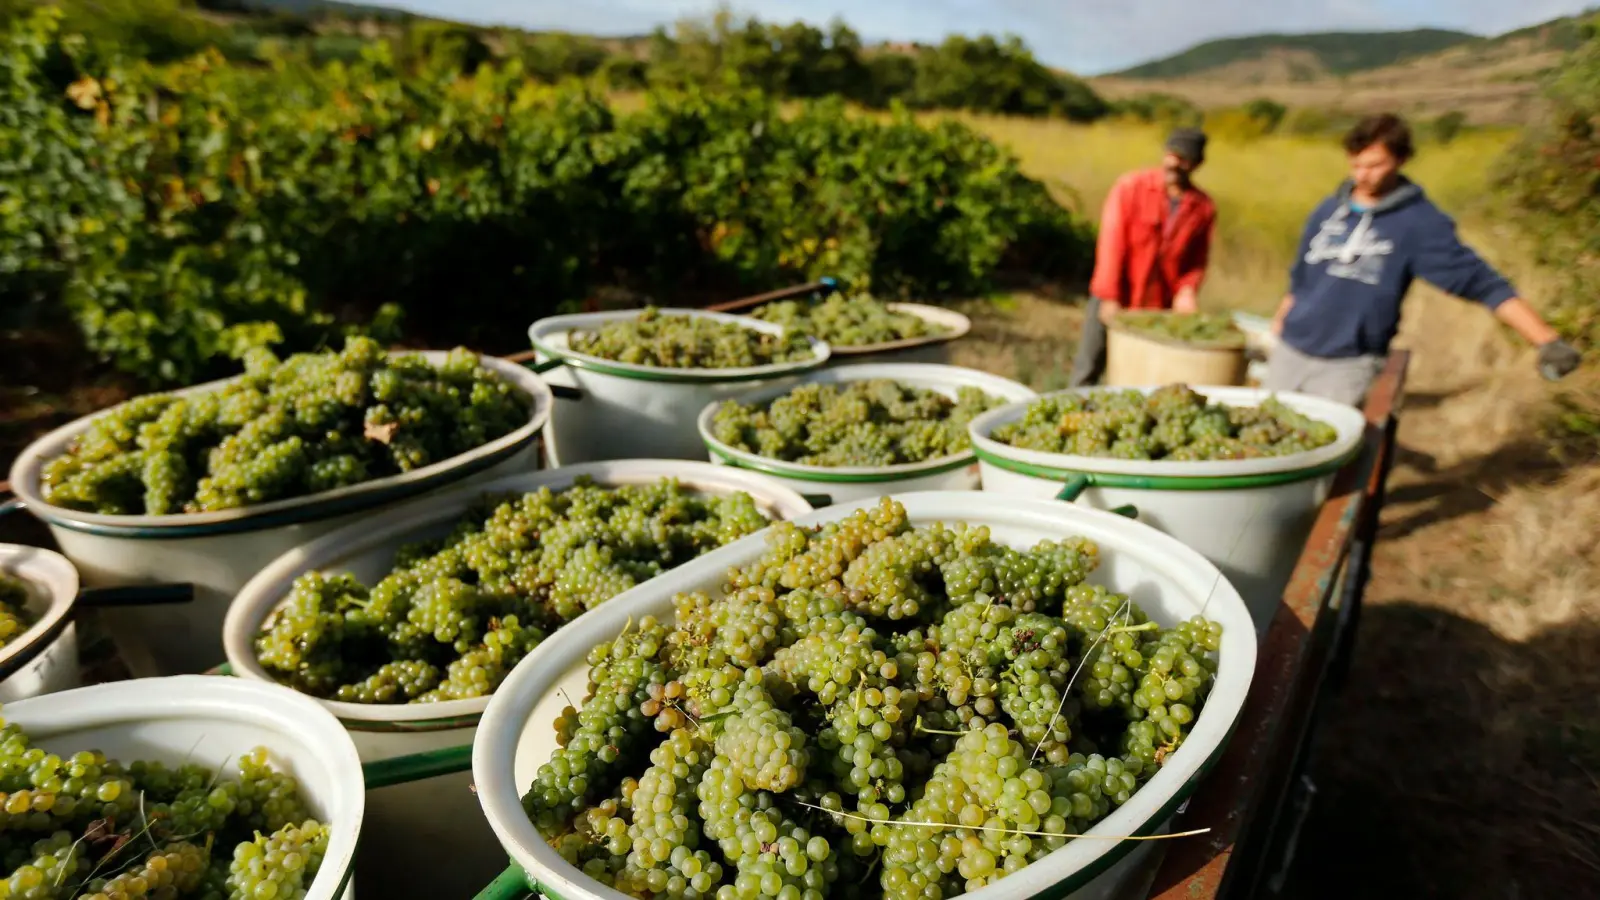 Weinlese von Bio-Trauben in Octon im Süden Frankreichs. Wegen der Hitze, musste nun früher als gewöhnlich mit der Weinlese begonnen werden. (Foto: Guillaume Horcajuelo/EPA/dpa)